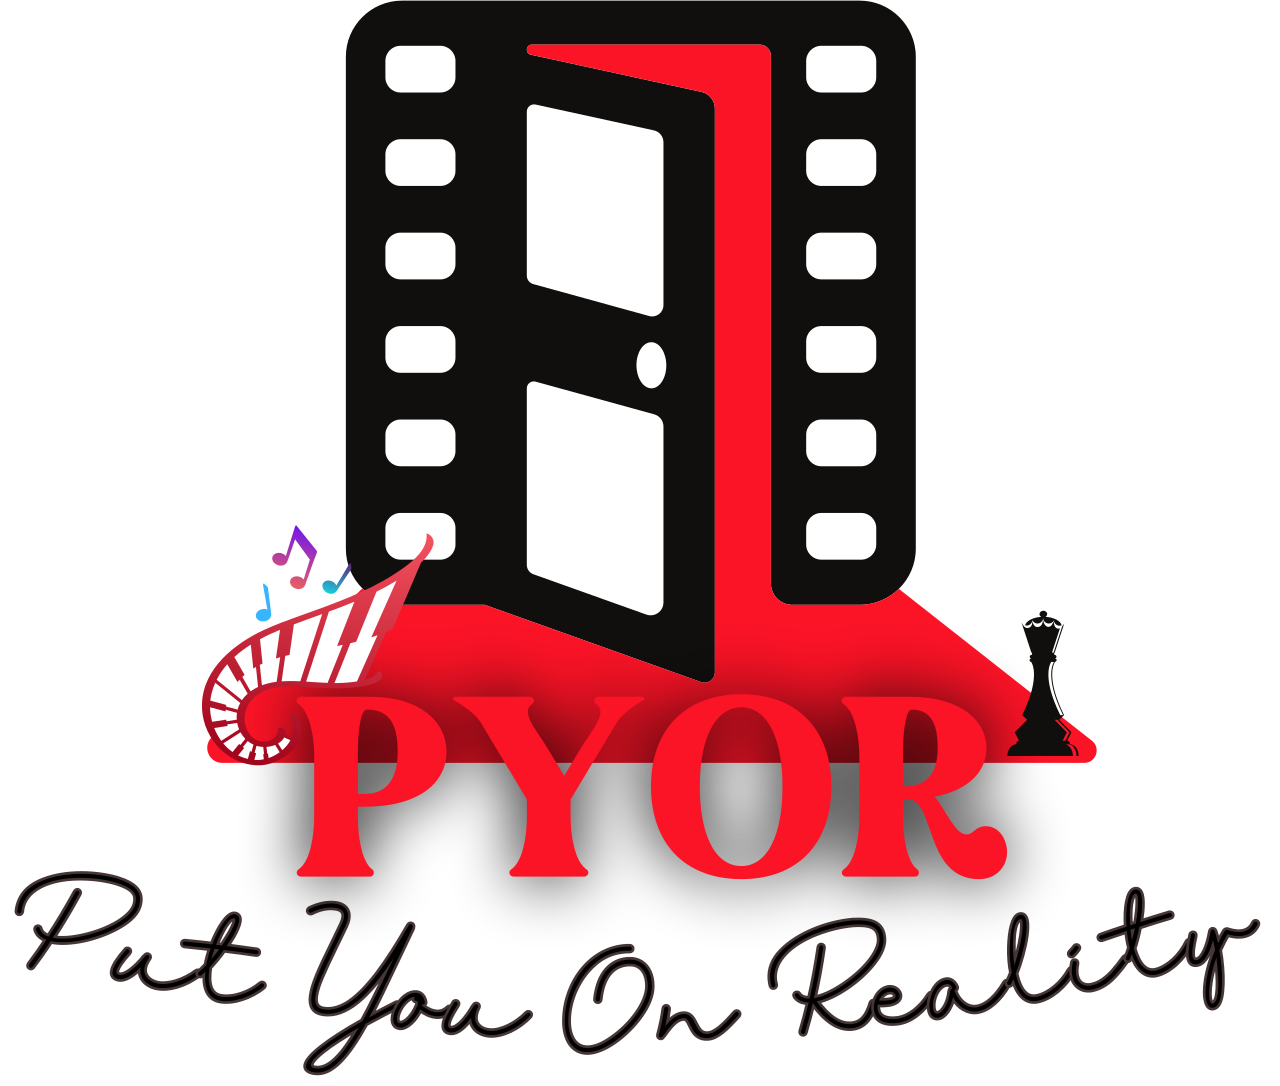 PYOR's web page